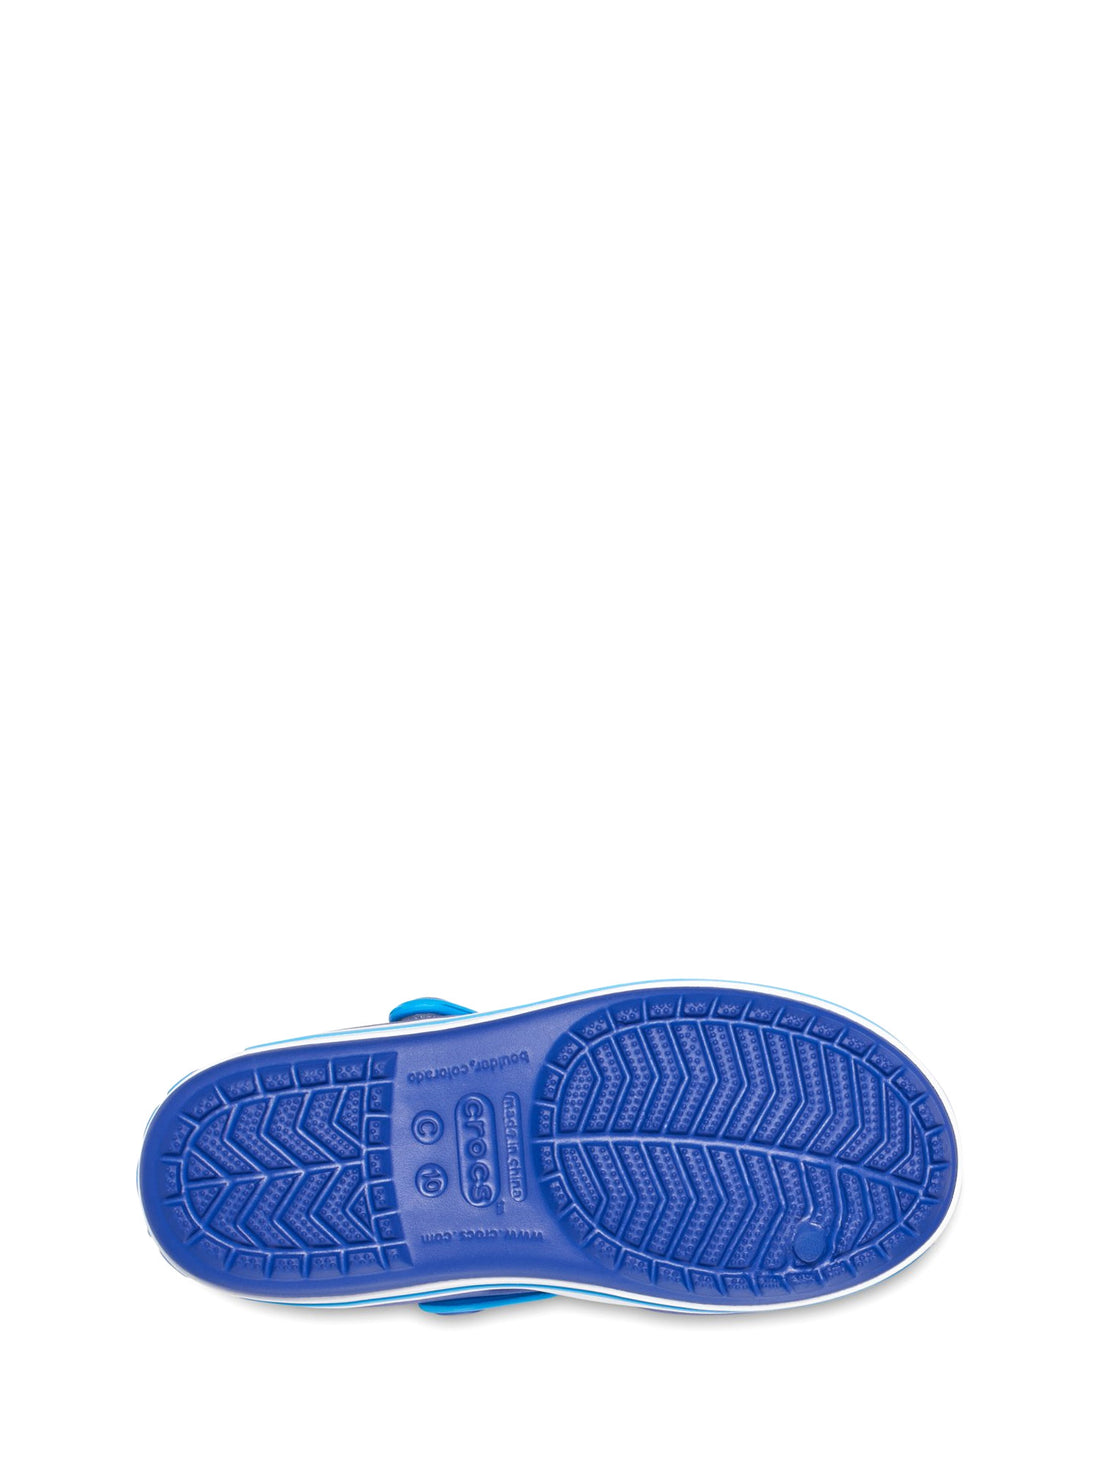 Sandali con strappi Blu Crocs